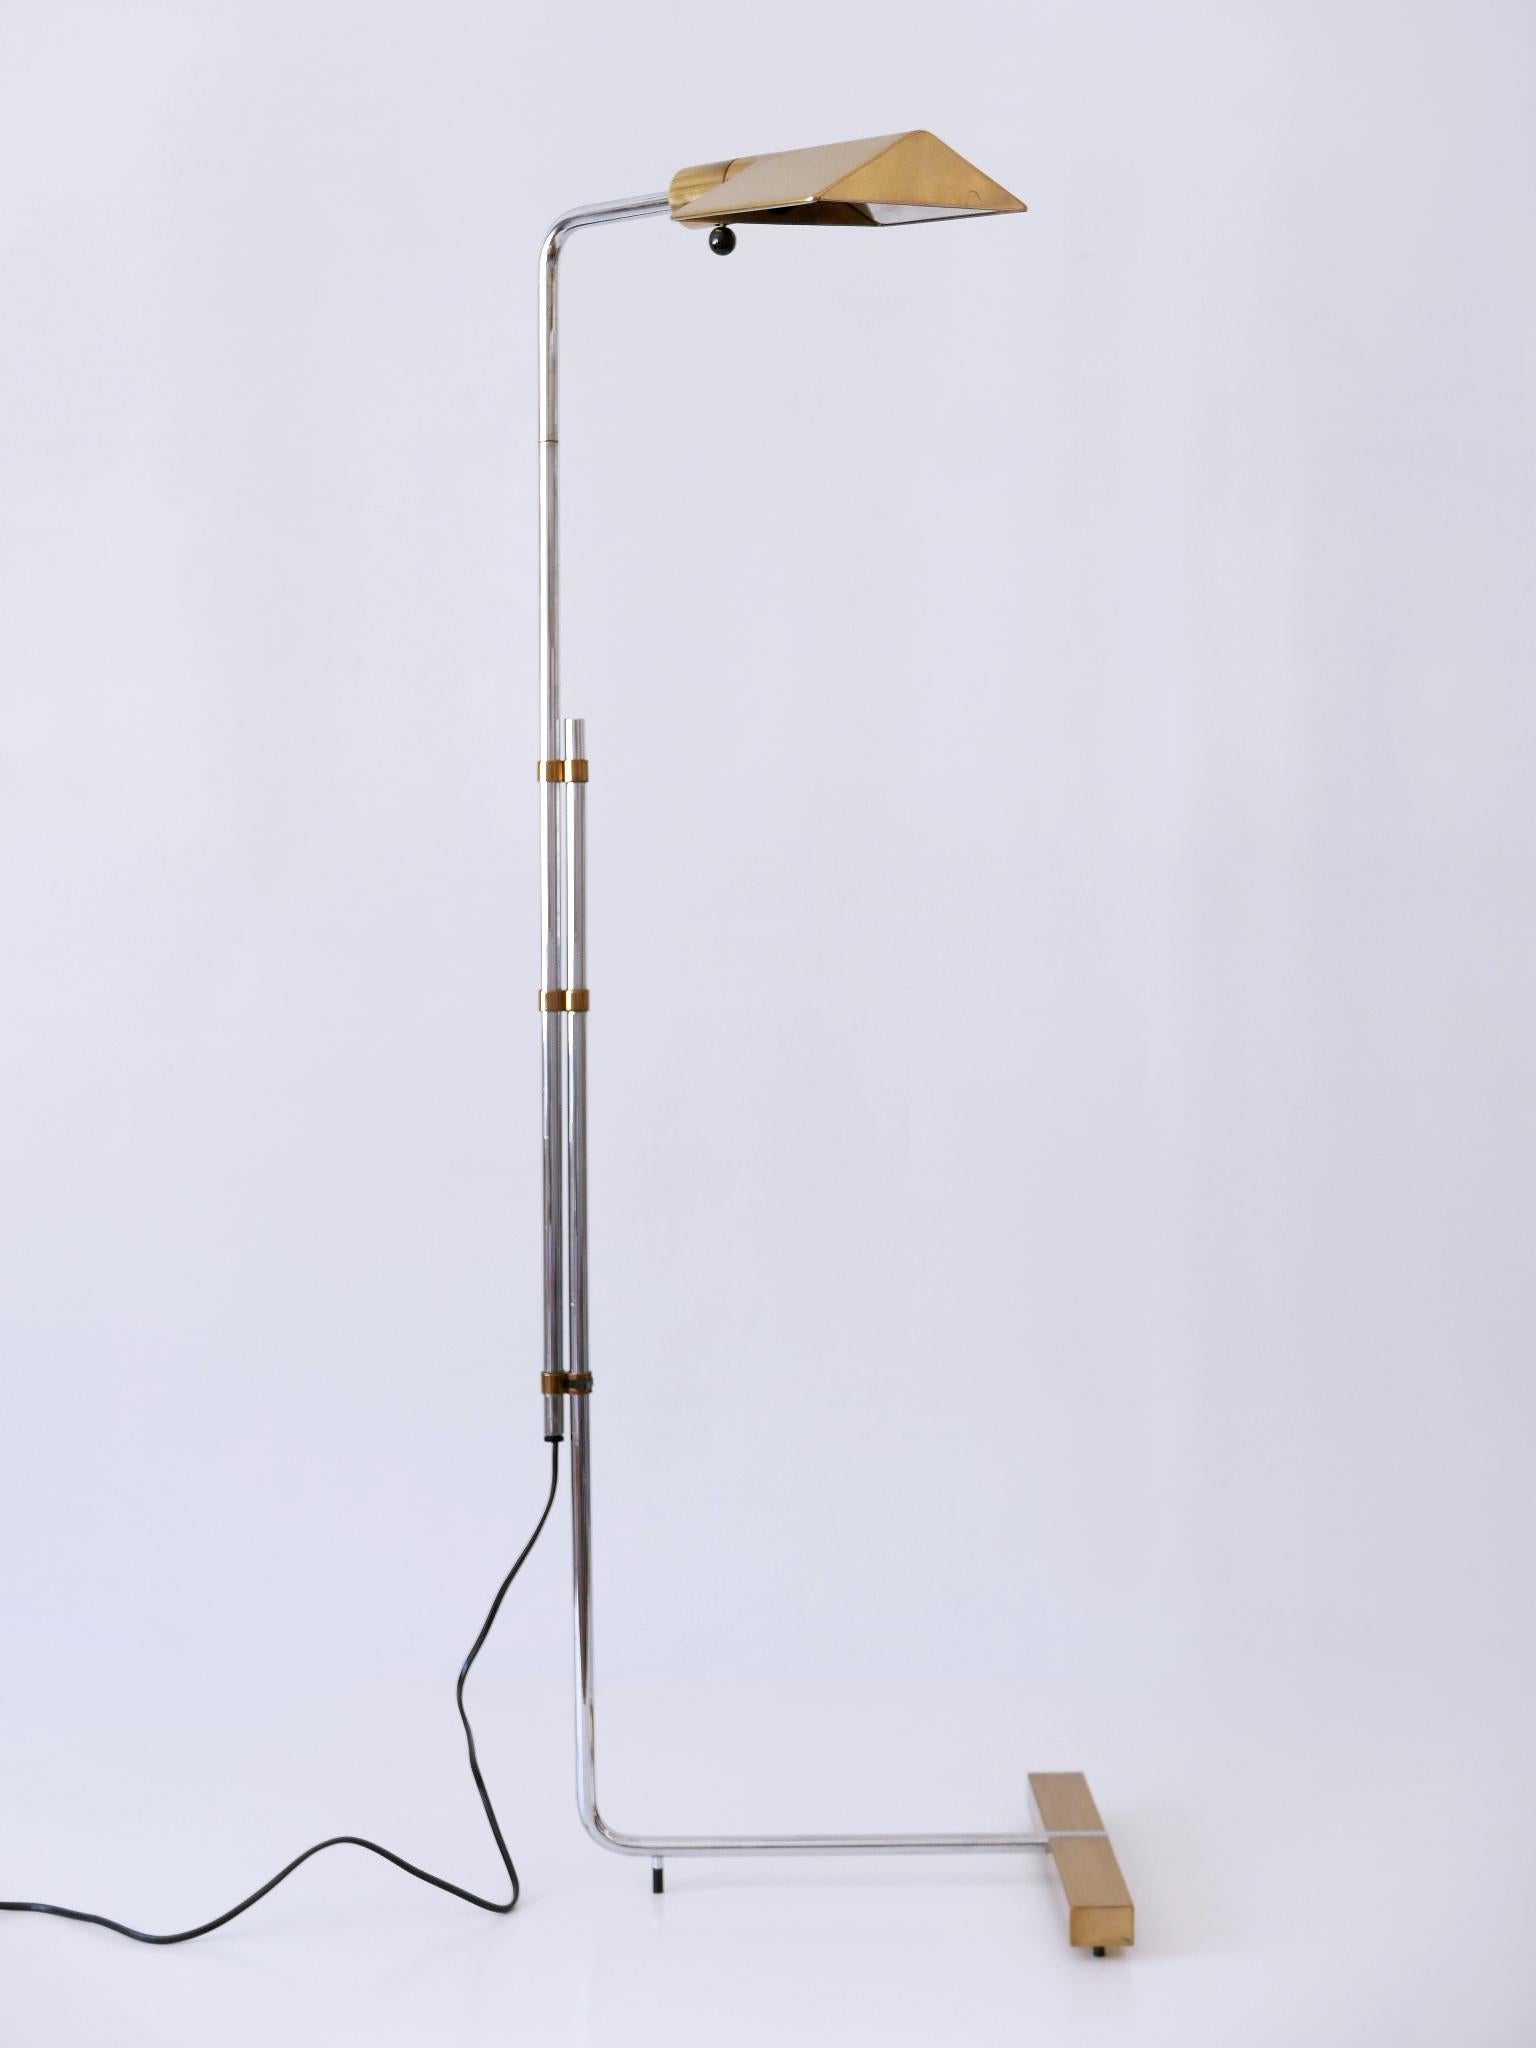 Brass Floor Lamp or Reading Light 'Backslider' by Cedric Hartman for Jack Lenor Larsen For Sale